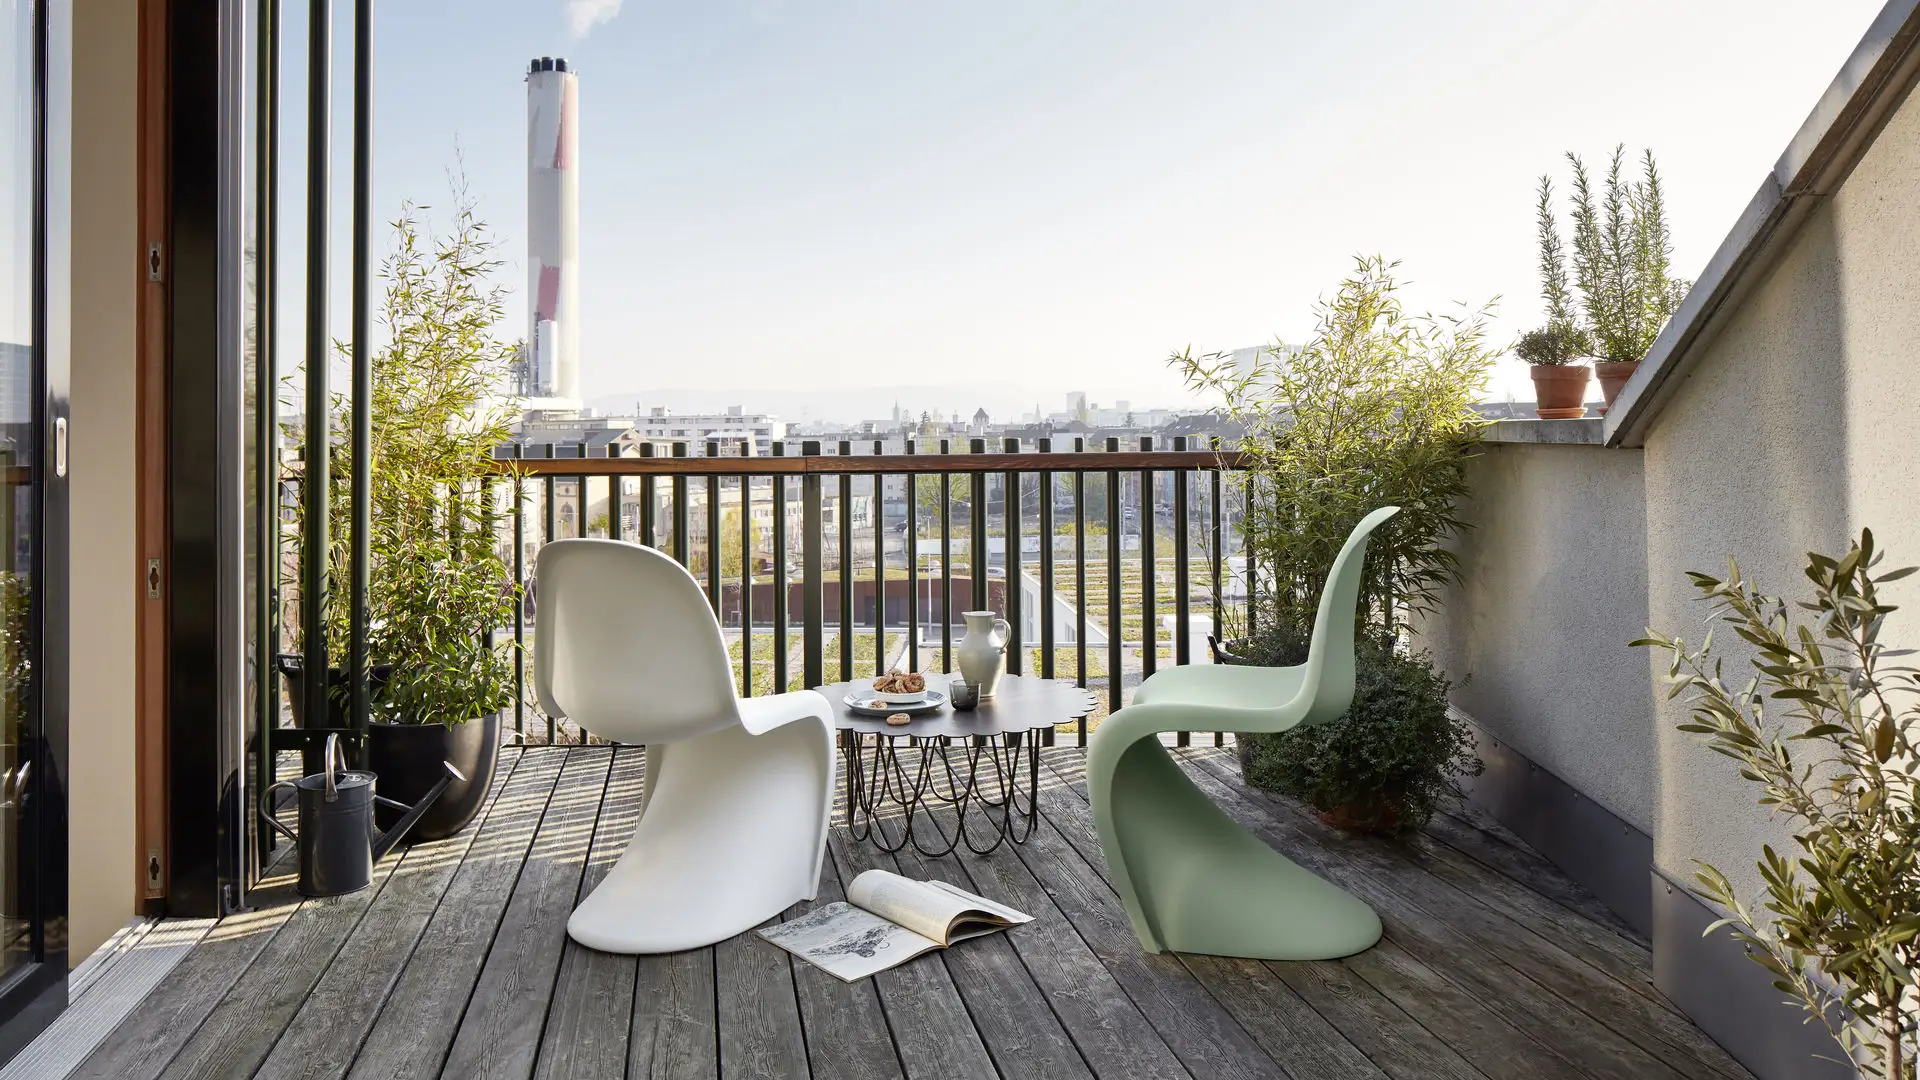 Terraza con suelo de madera, sillas modernas en verde y blanco y al centro la mesa flower table en color negro.